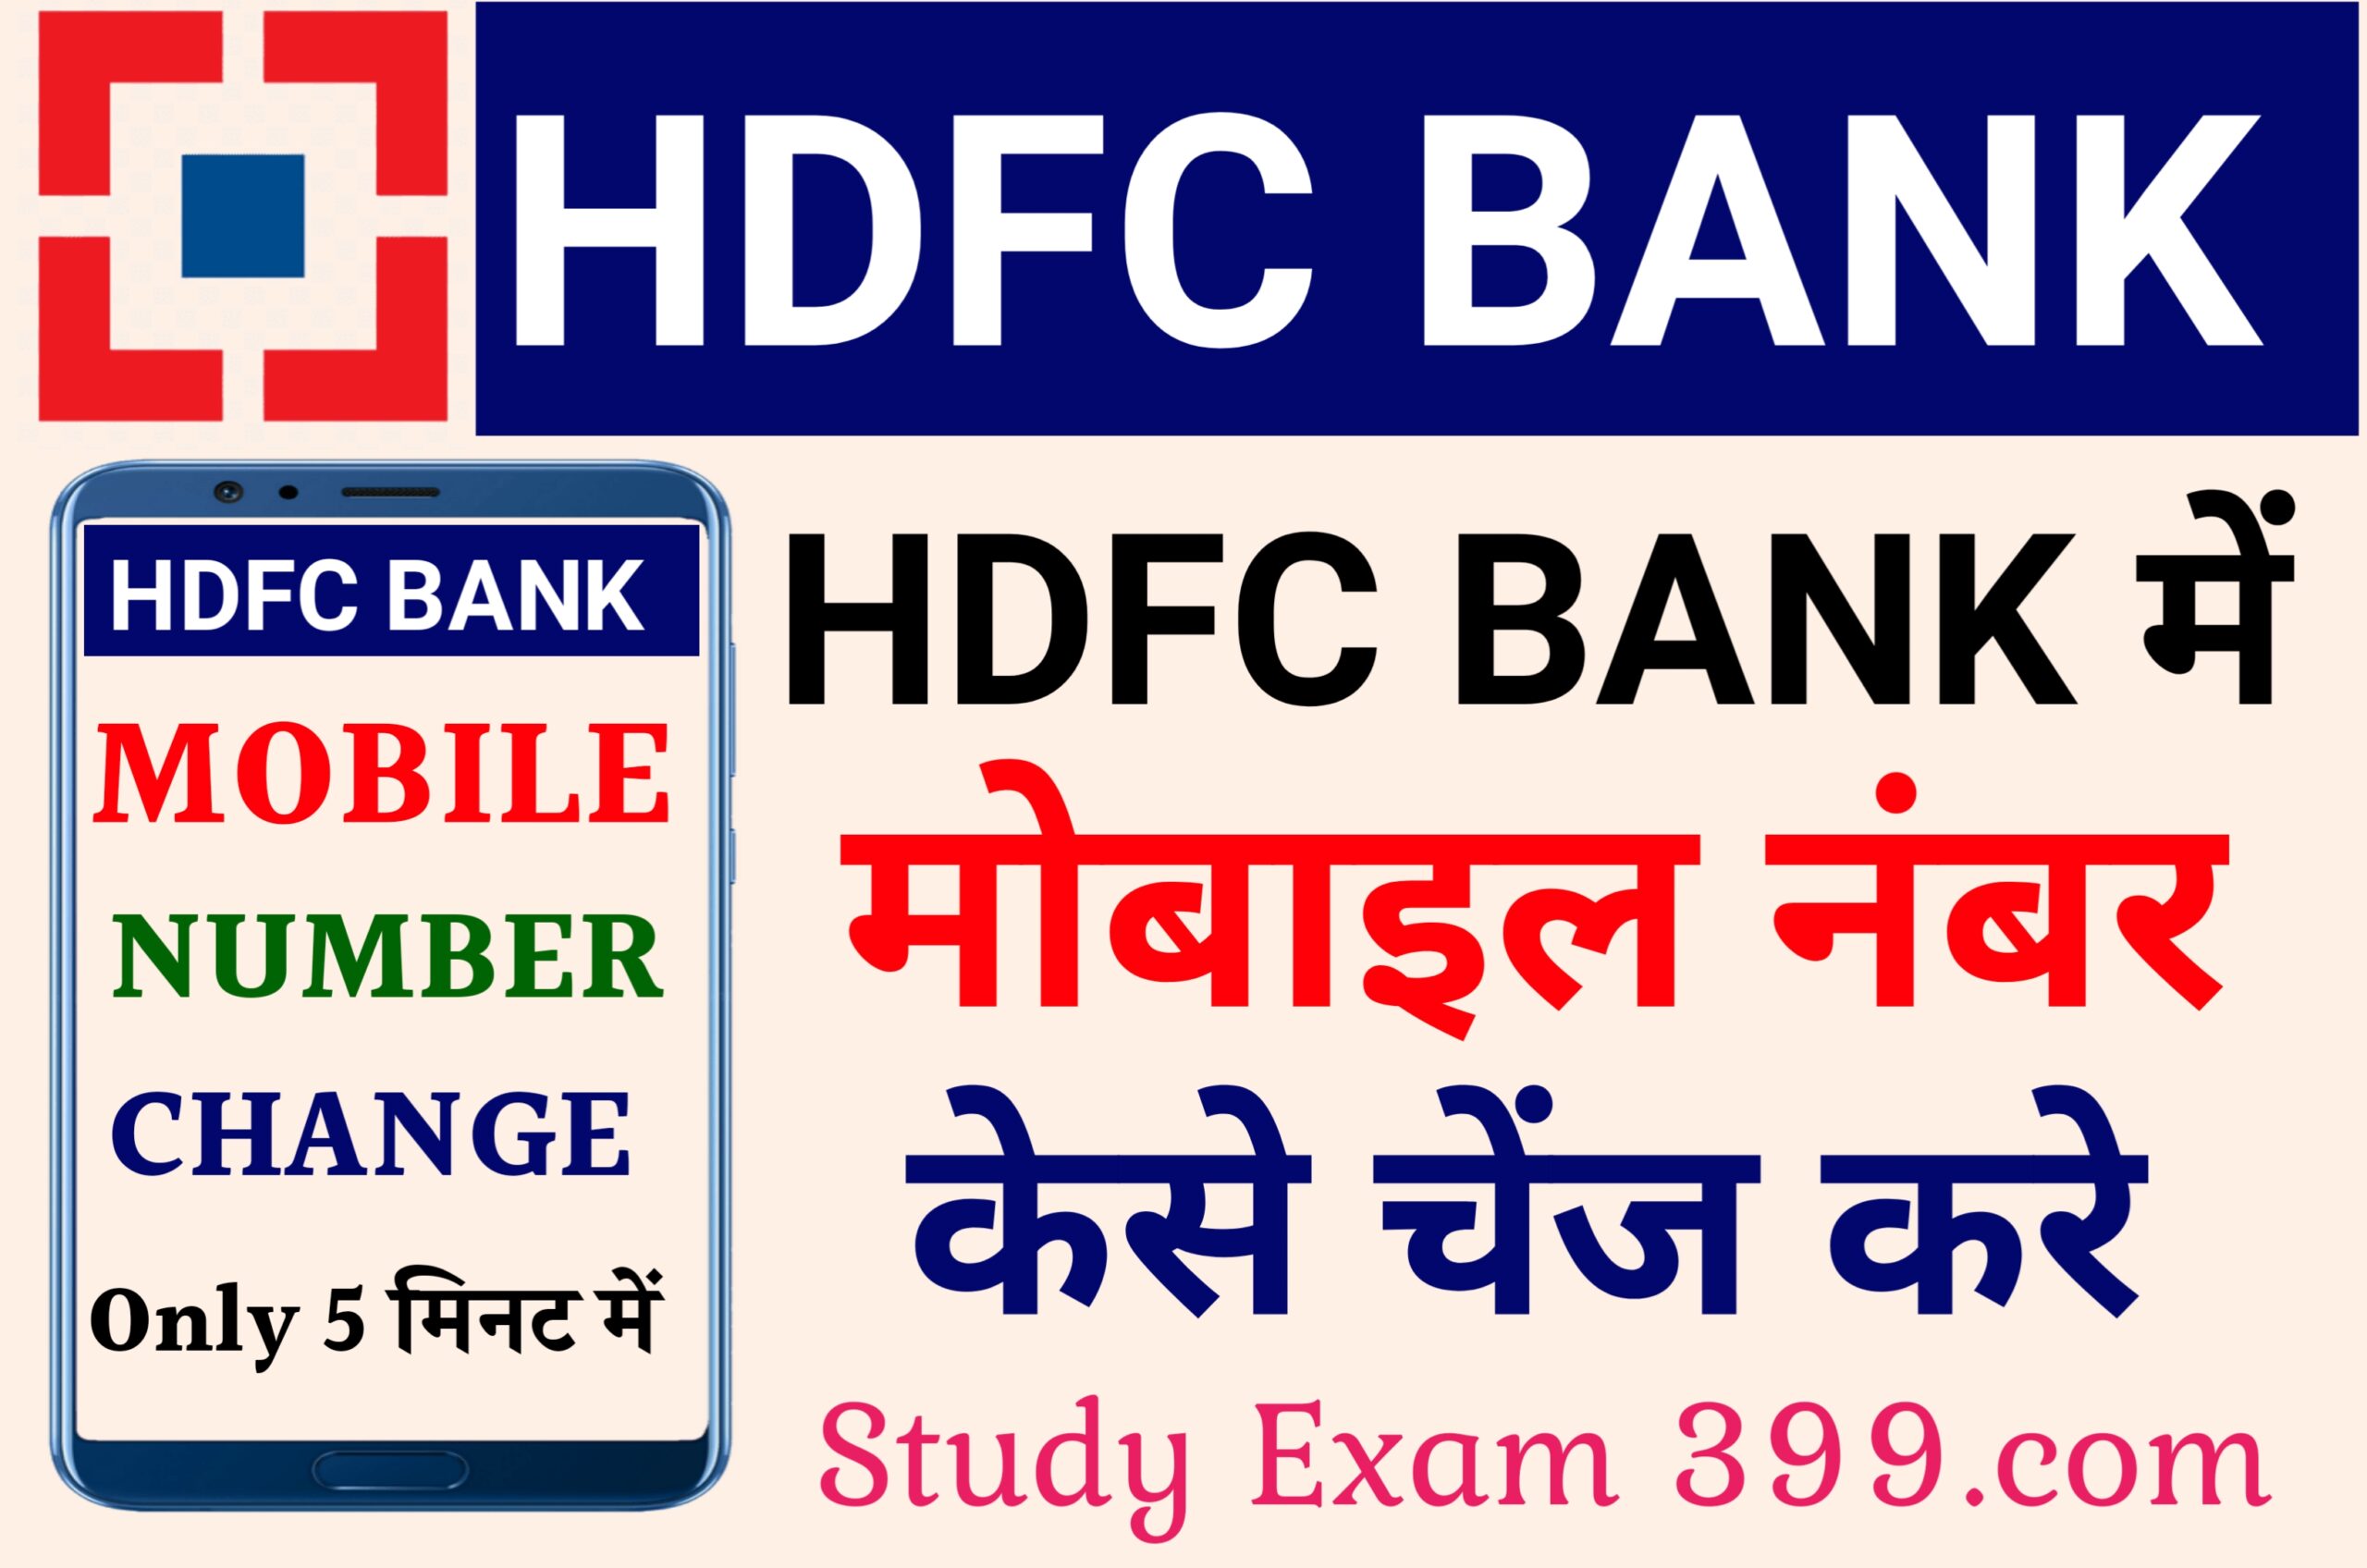 HDFC Bank Account Mai Mobile Number Change Kaise Kare - एचडीएफसी बैंक खाता में मोबाइल नंबर कैसे बदलें आइए जानिए ऑनलाइन के माध्यम से पूरा प्रोसेस